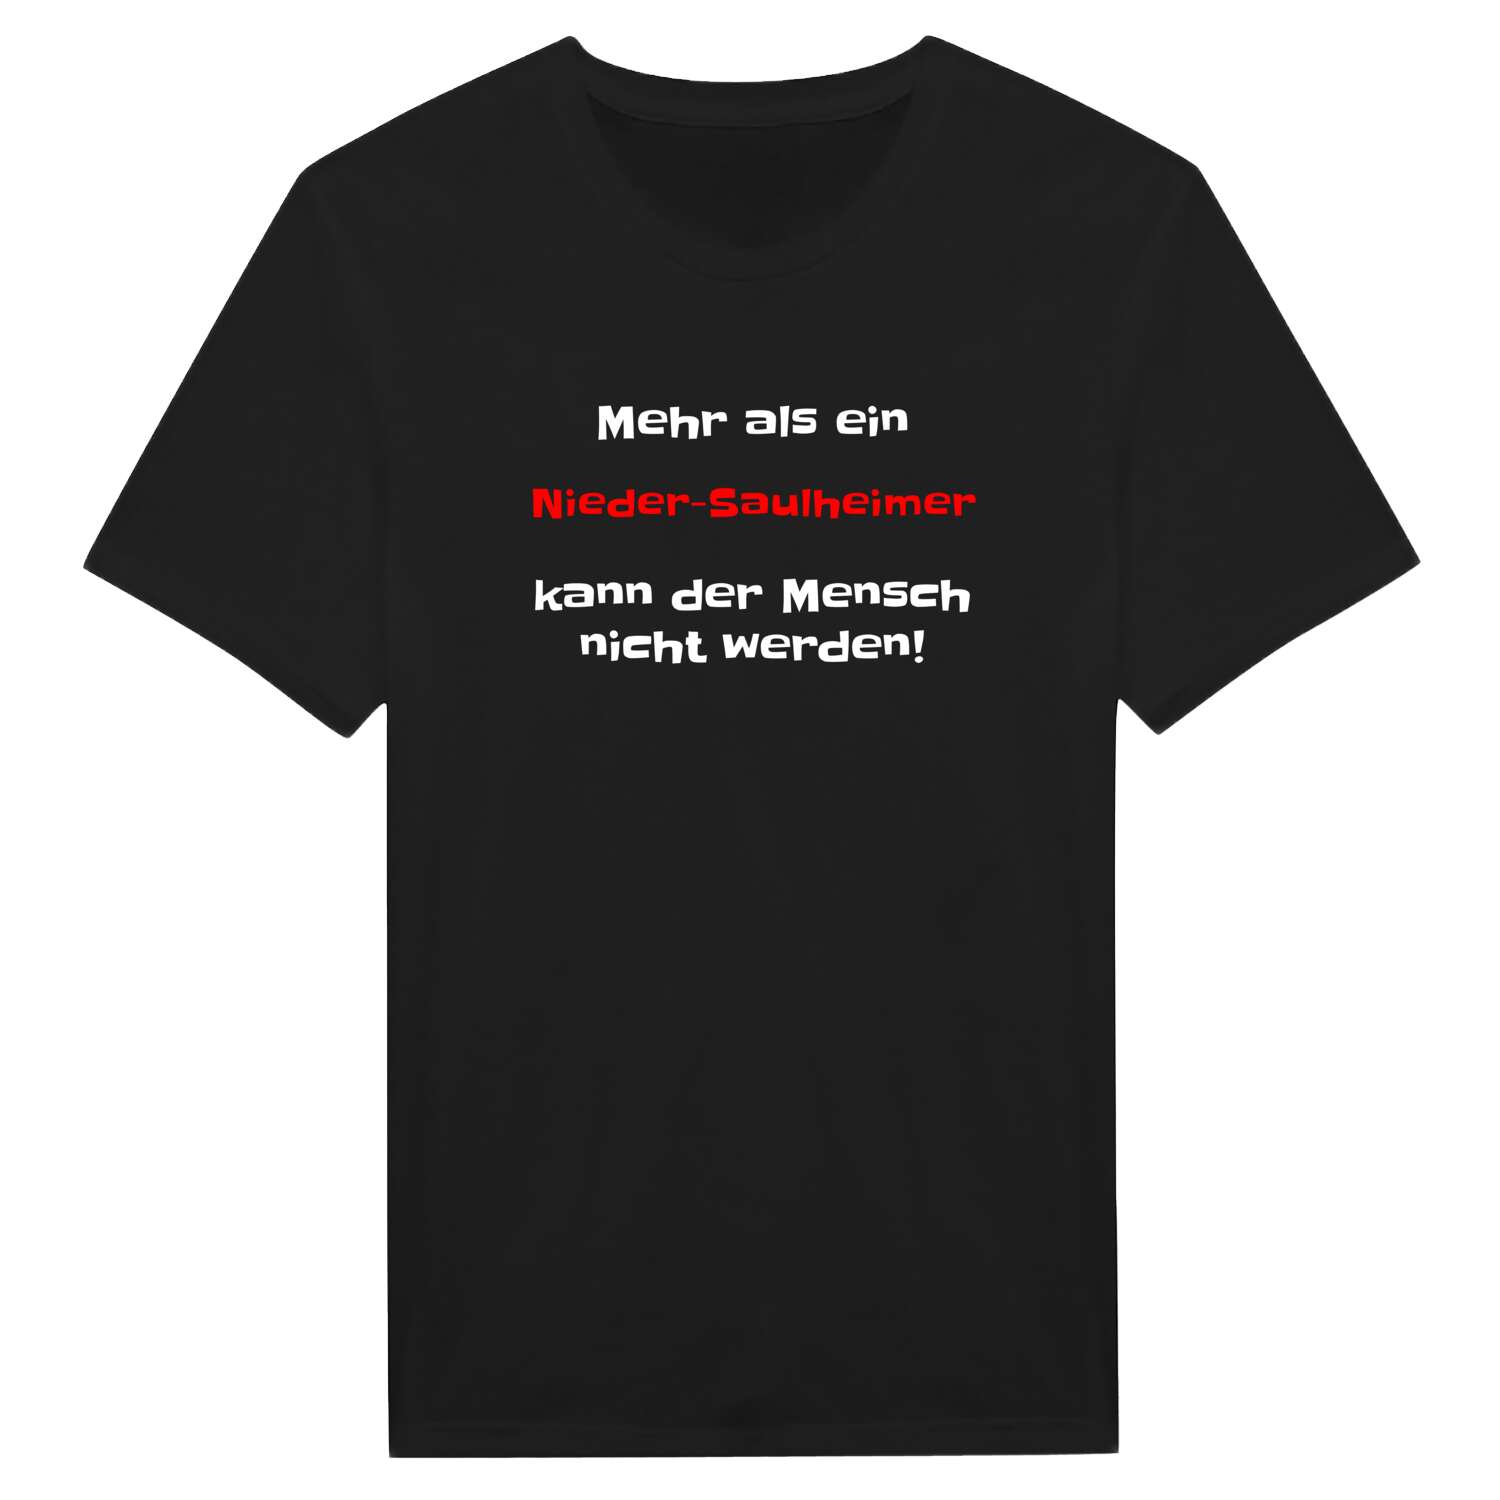 Nieder-Saulheim T-Shirt »Mehr als ein«